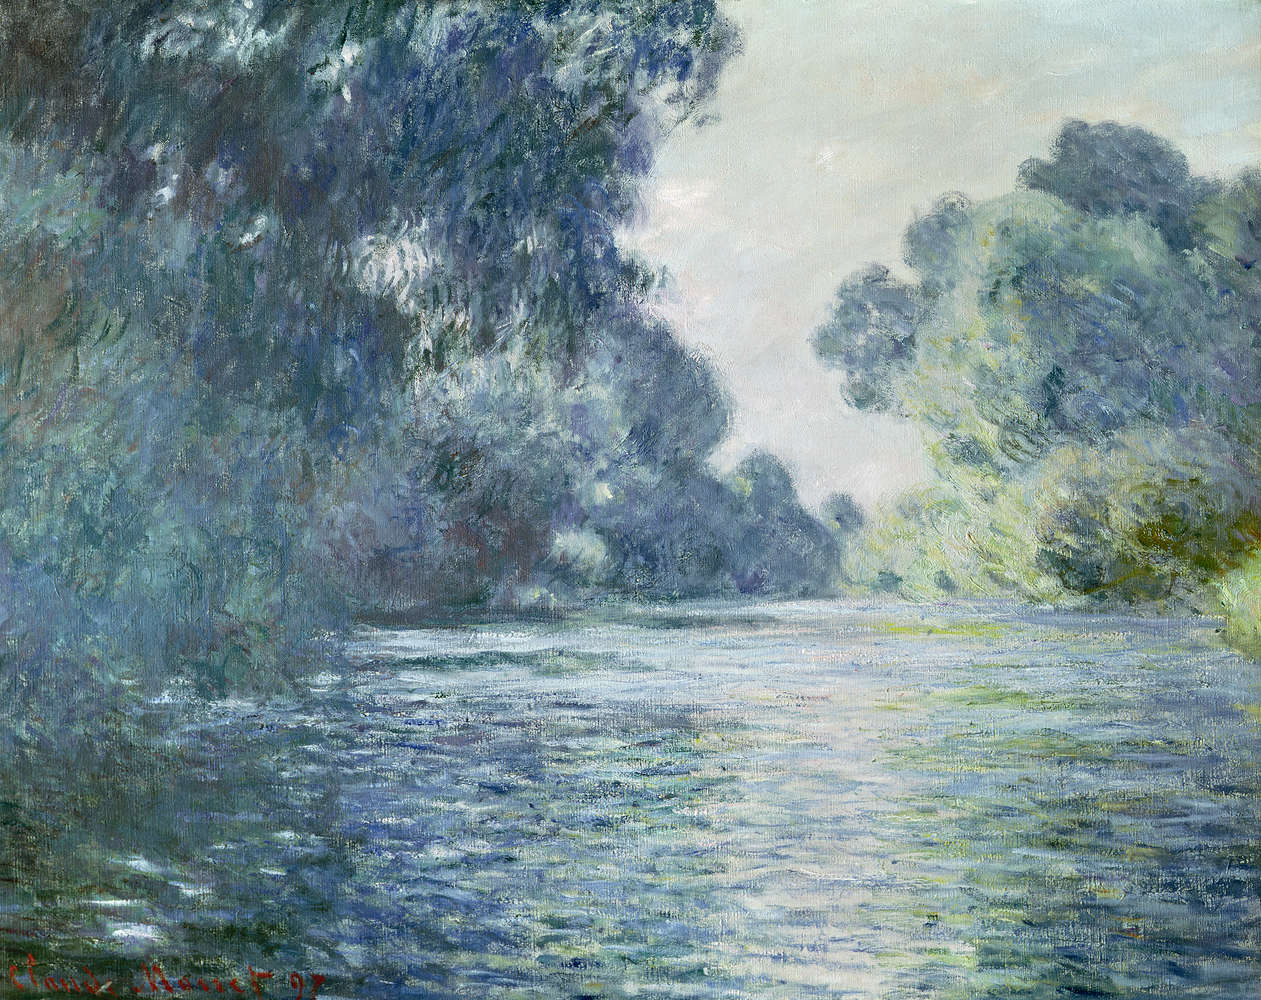             Mural "En un brazo del Sena cerca de Giverny" de Claude Monet
        